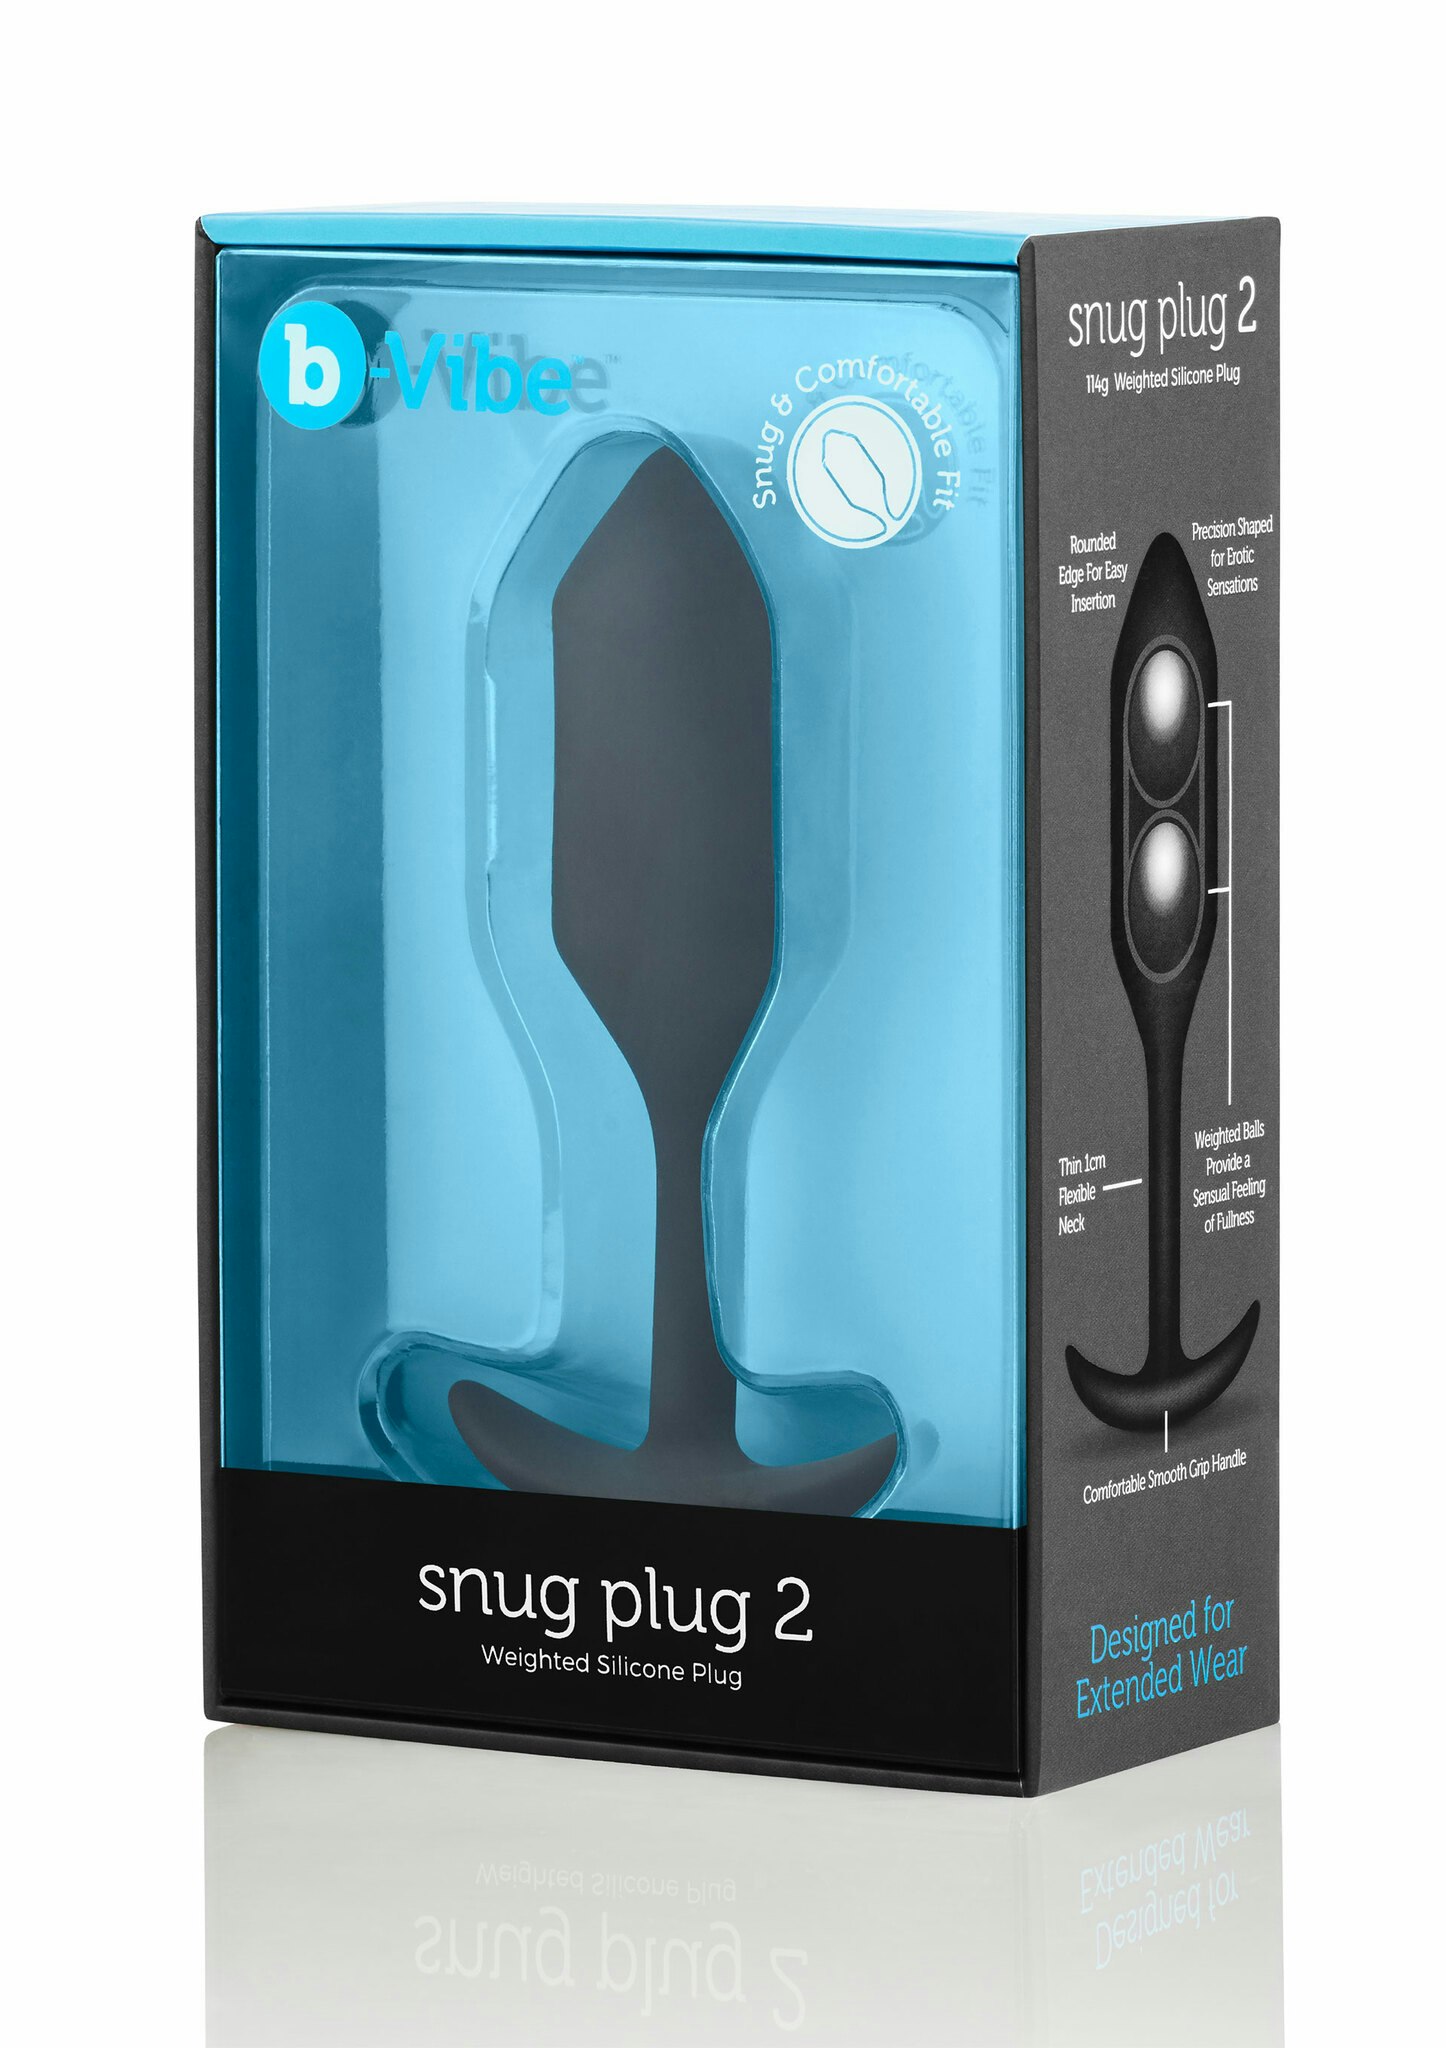 B-Vibe - Snug Plug 2